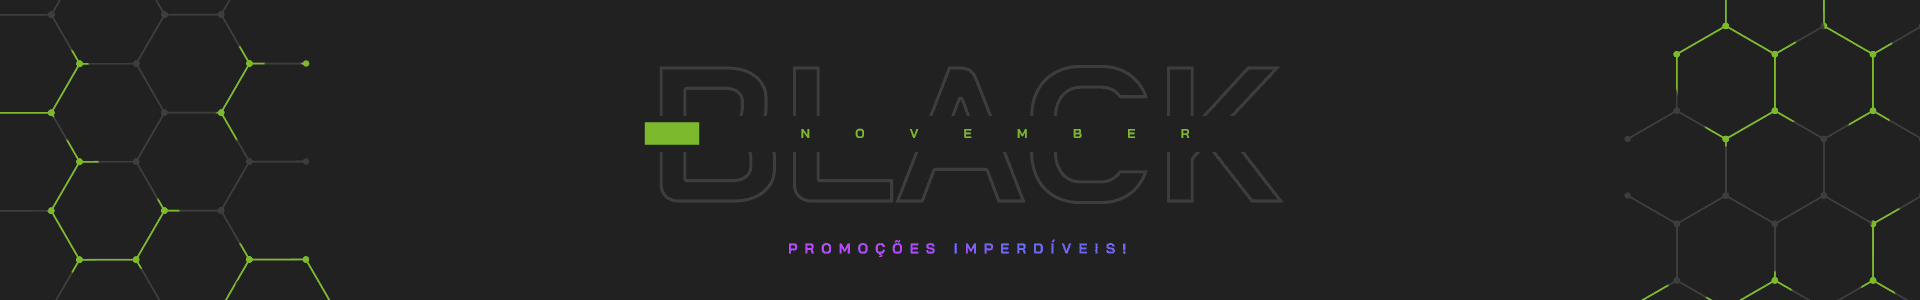 blacknovember-interno